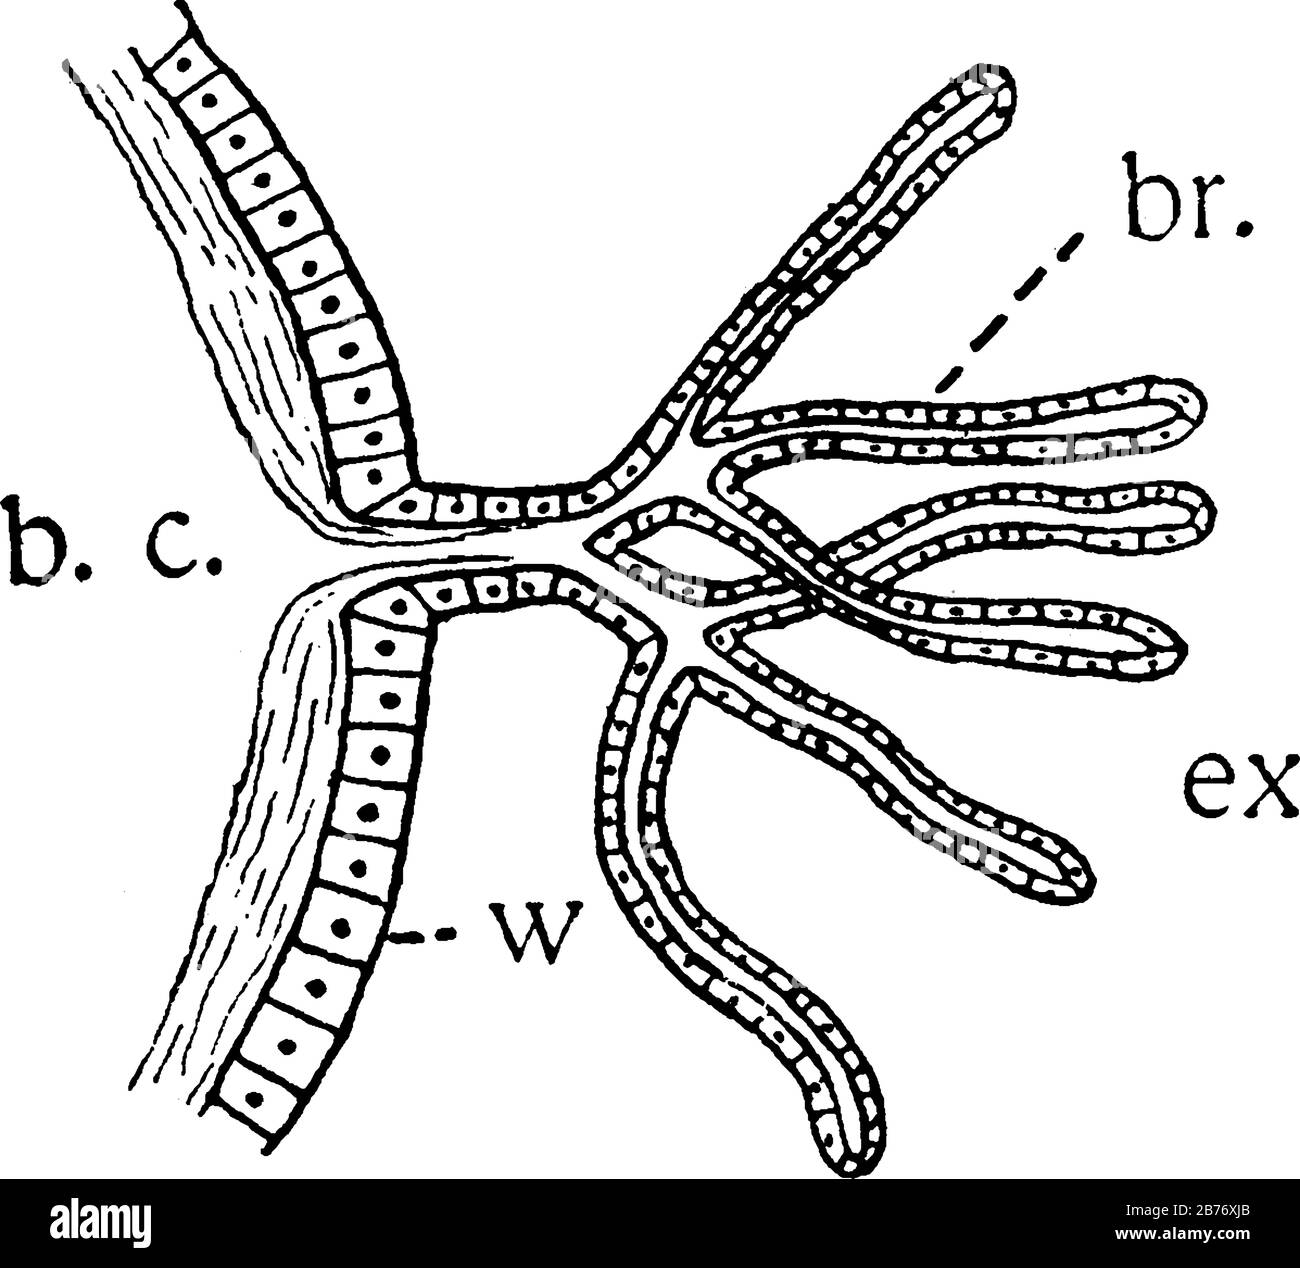 Etiketten: B.c., Hohlraum, in dem die Körperflüssigkeiten zirkulieren; br., branchiale Filamente, die aus der Körperwand (w) ausgedünnt werden; und andere, vin Stock Vektor